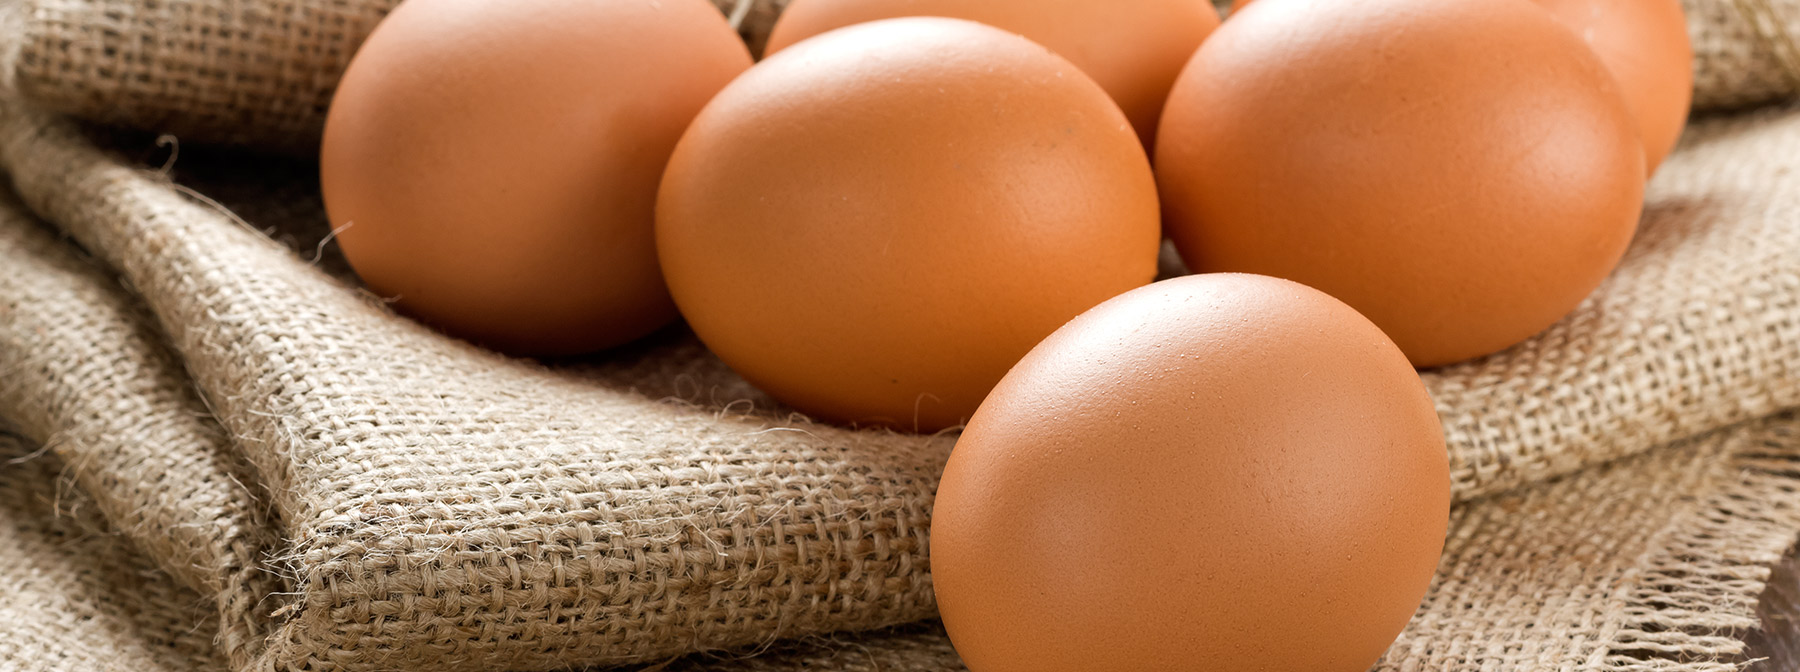 Białko jaja kurzego – co lepsze? | Żółtko czy białko?